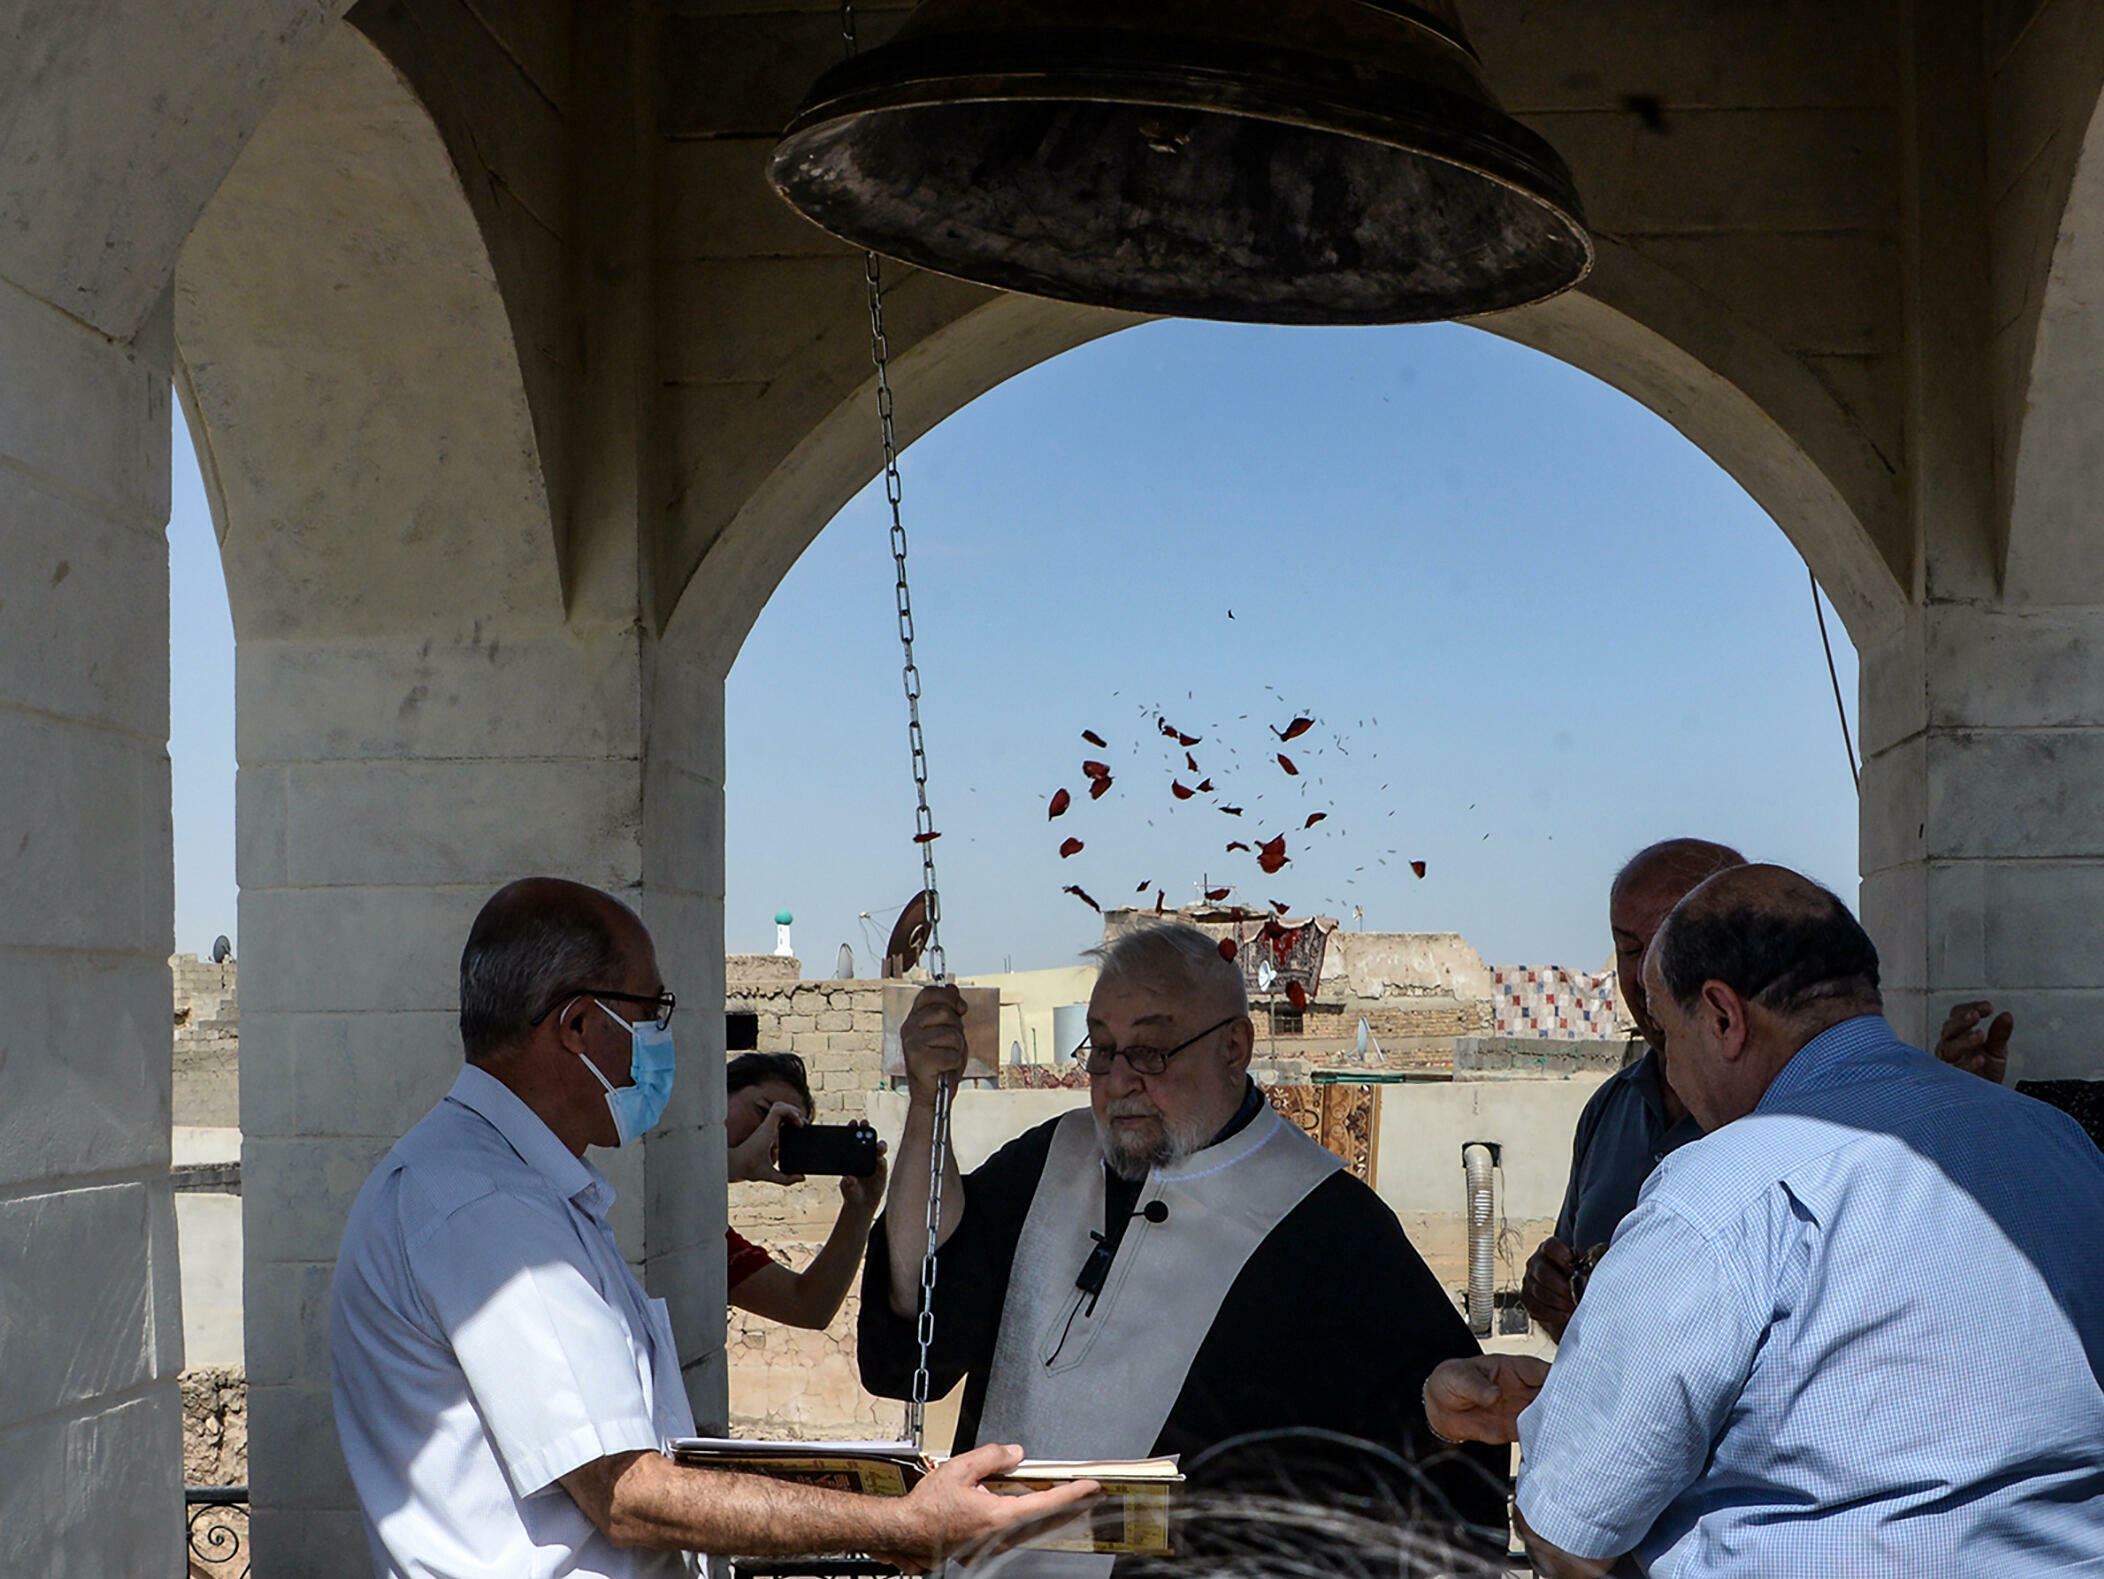 للمرة الأولى بعد "داعش"... كنيسة الموصل تقرع جرسها